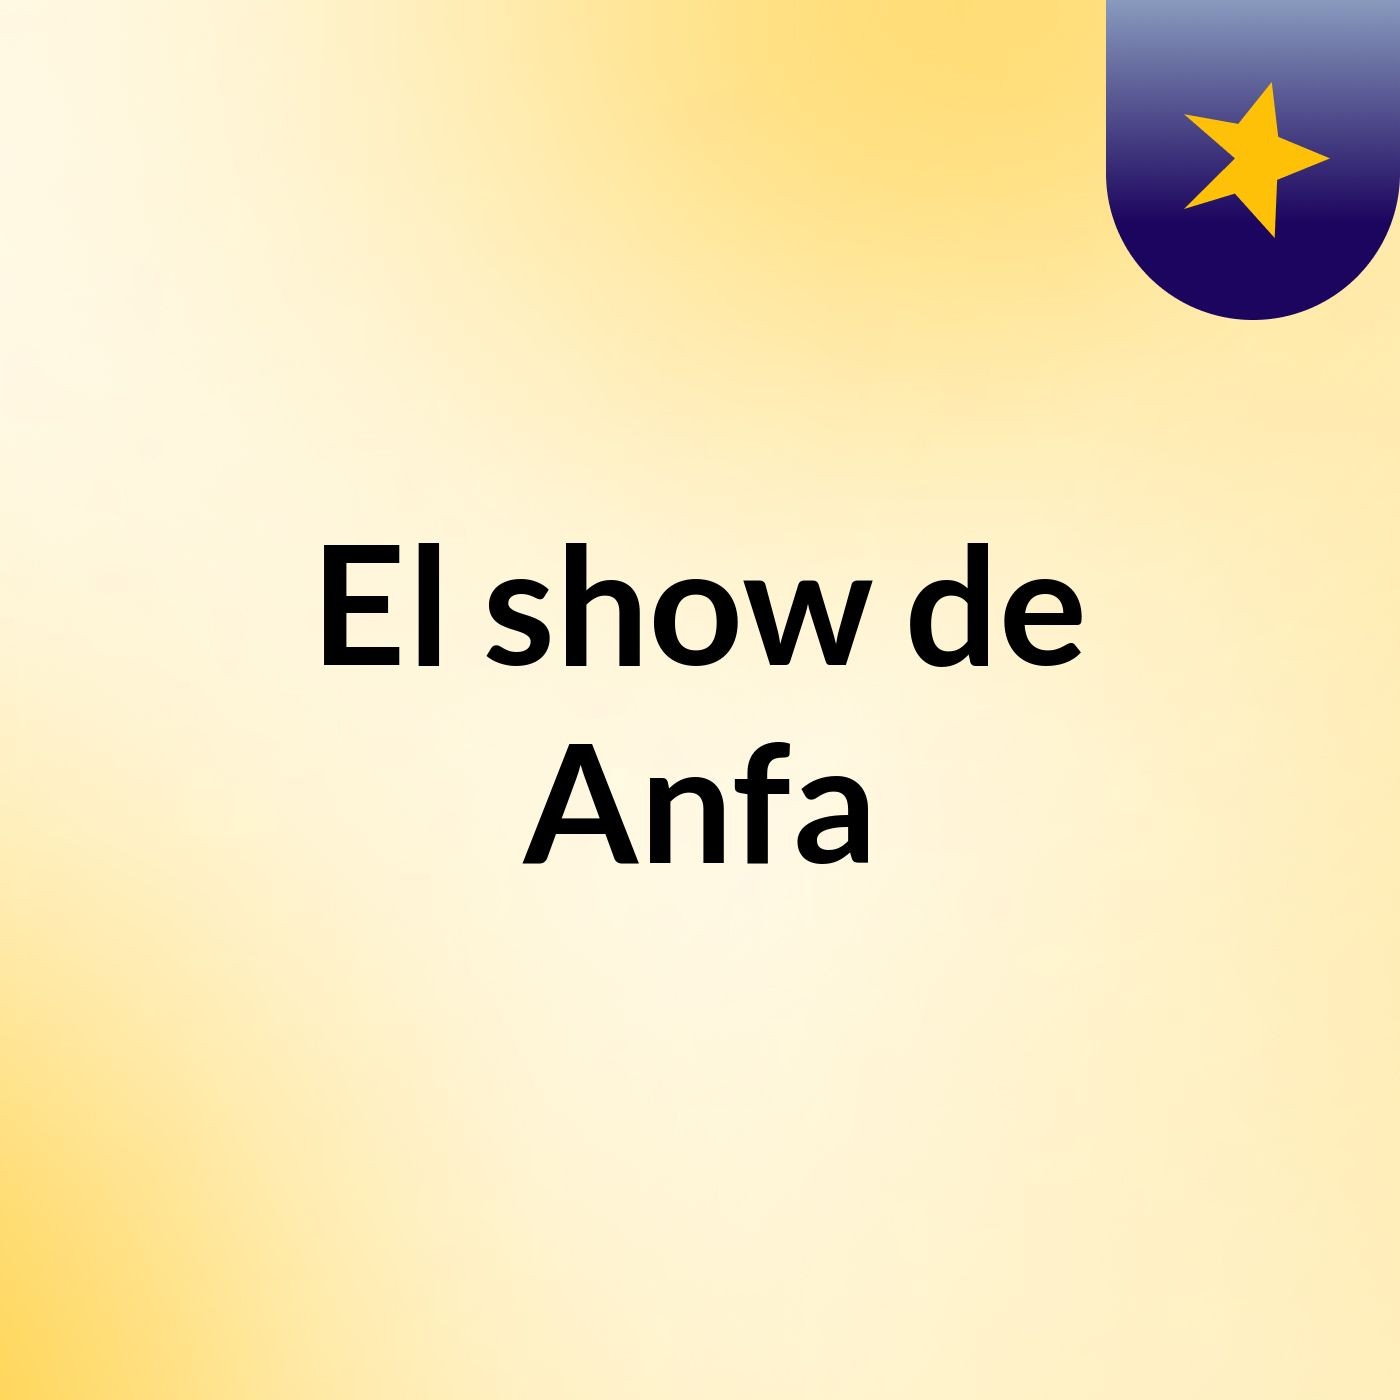 El show de Anfa